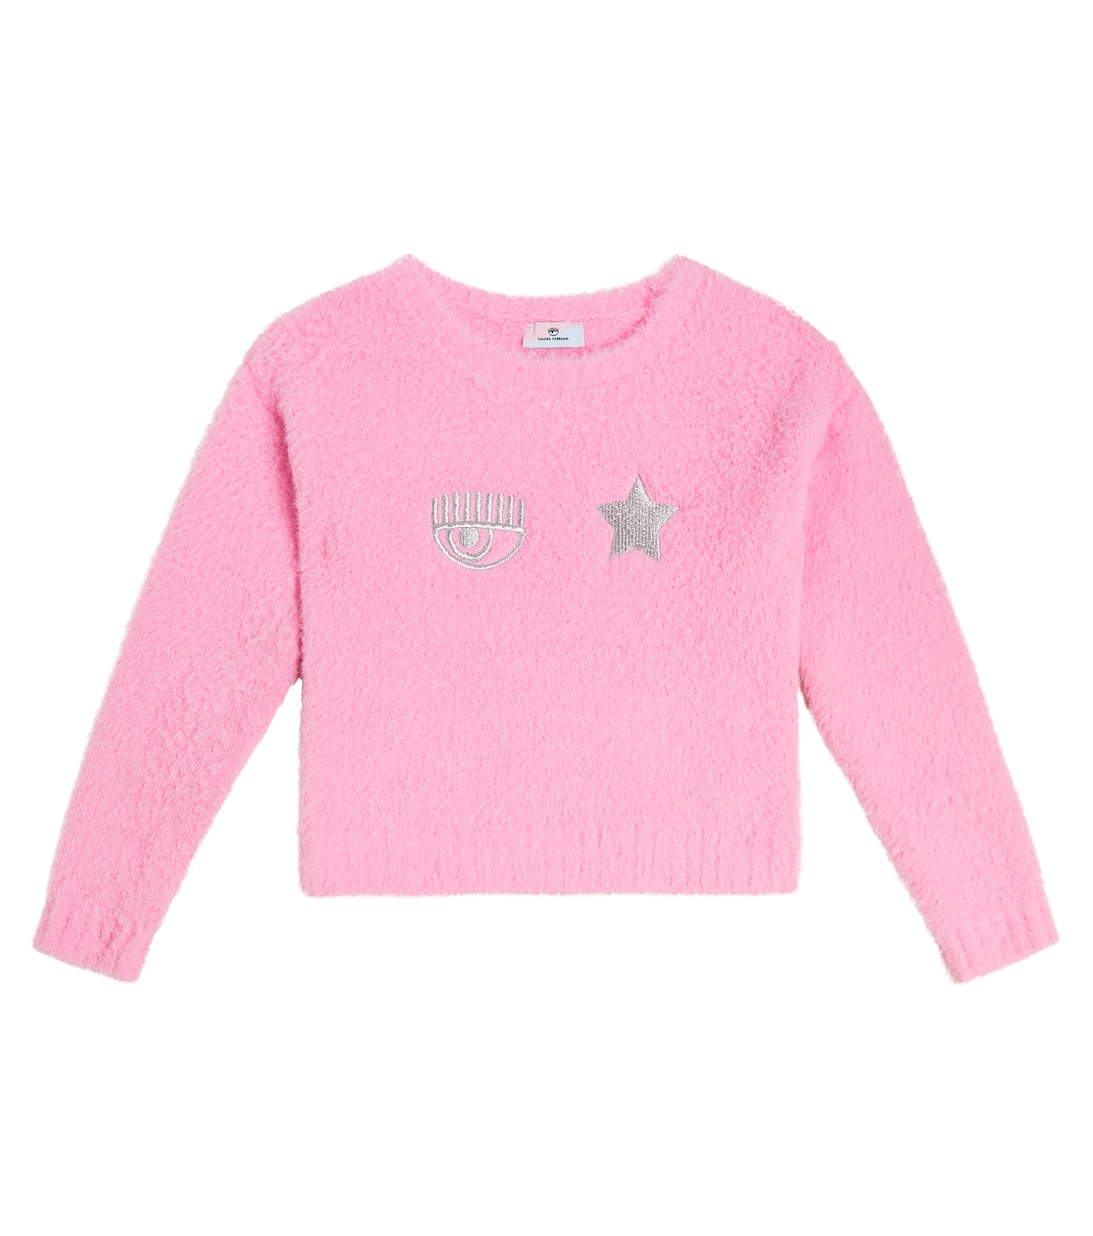 Вышитый свитер Monnalisa, розовый